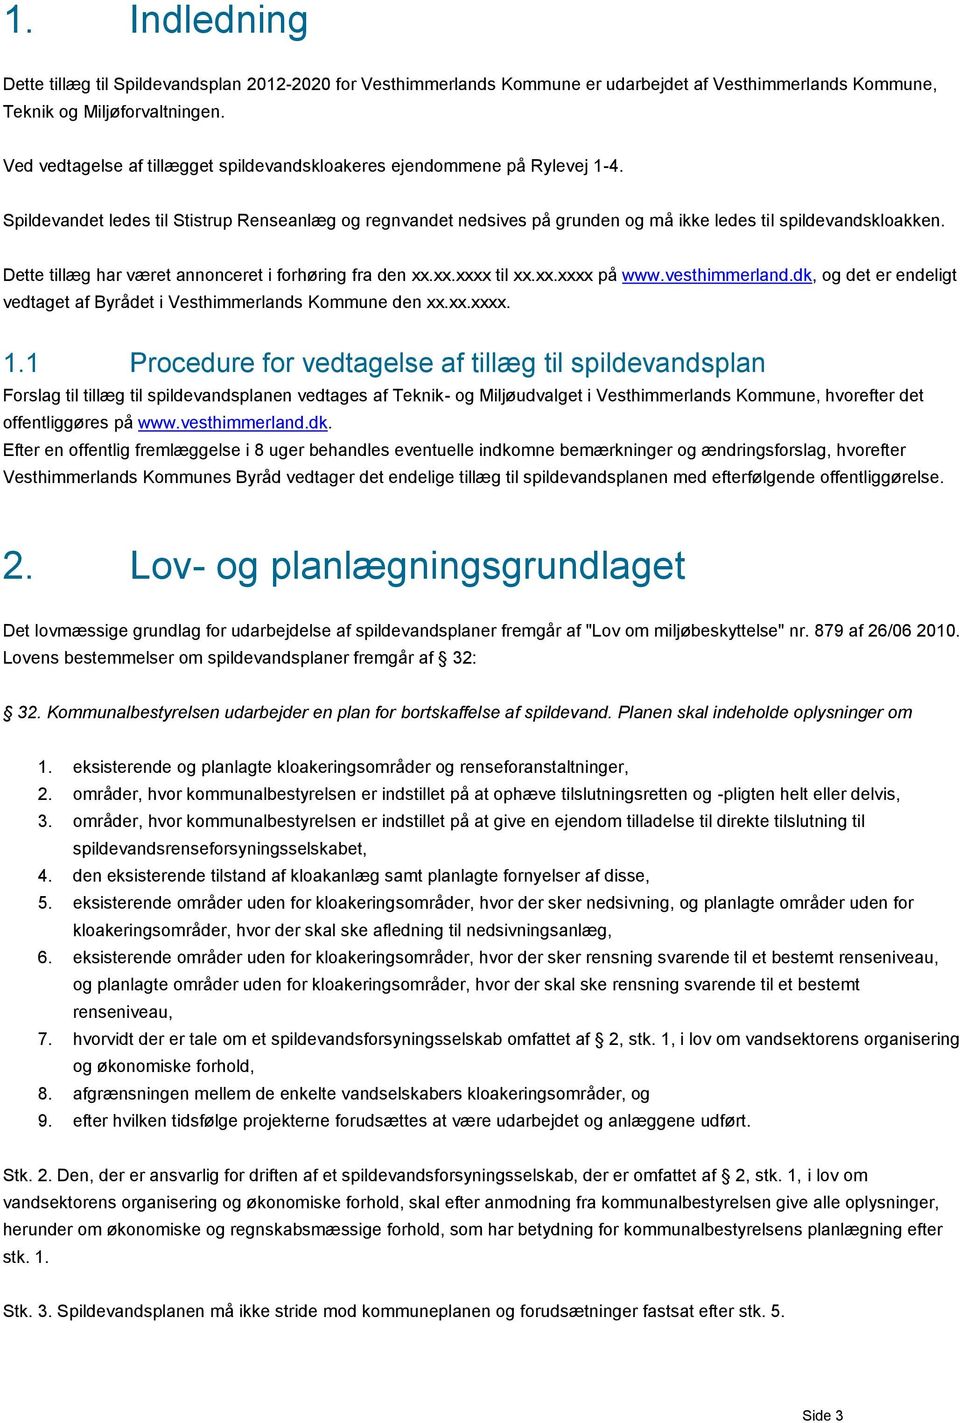 Dette tillæg har været annonceret i forhøring fra den.. til.. på www.vesthimmerland.dk, og det er endeligt vedtaget af Byrådet i Vesthimmerlands Kommune den... 1.